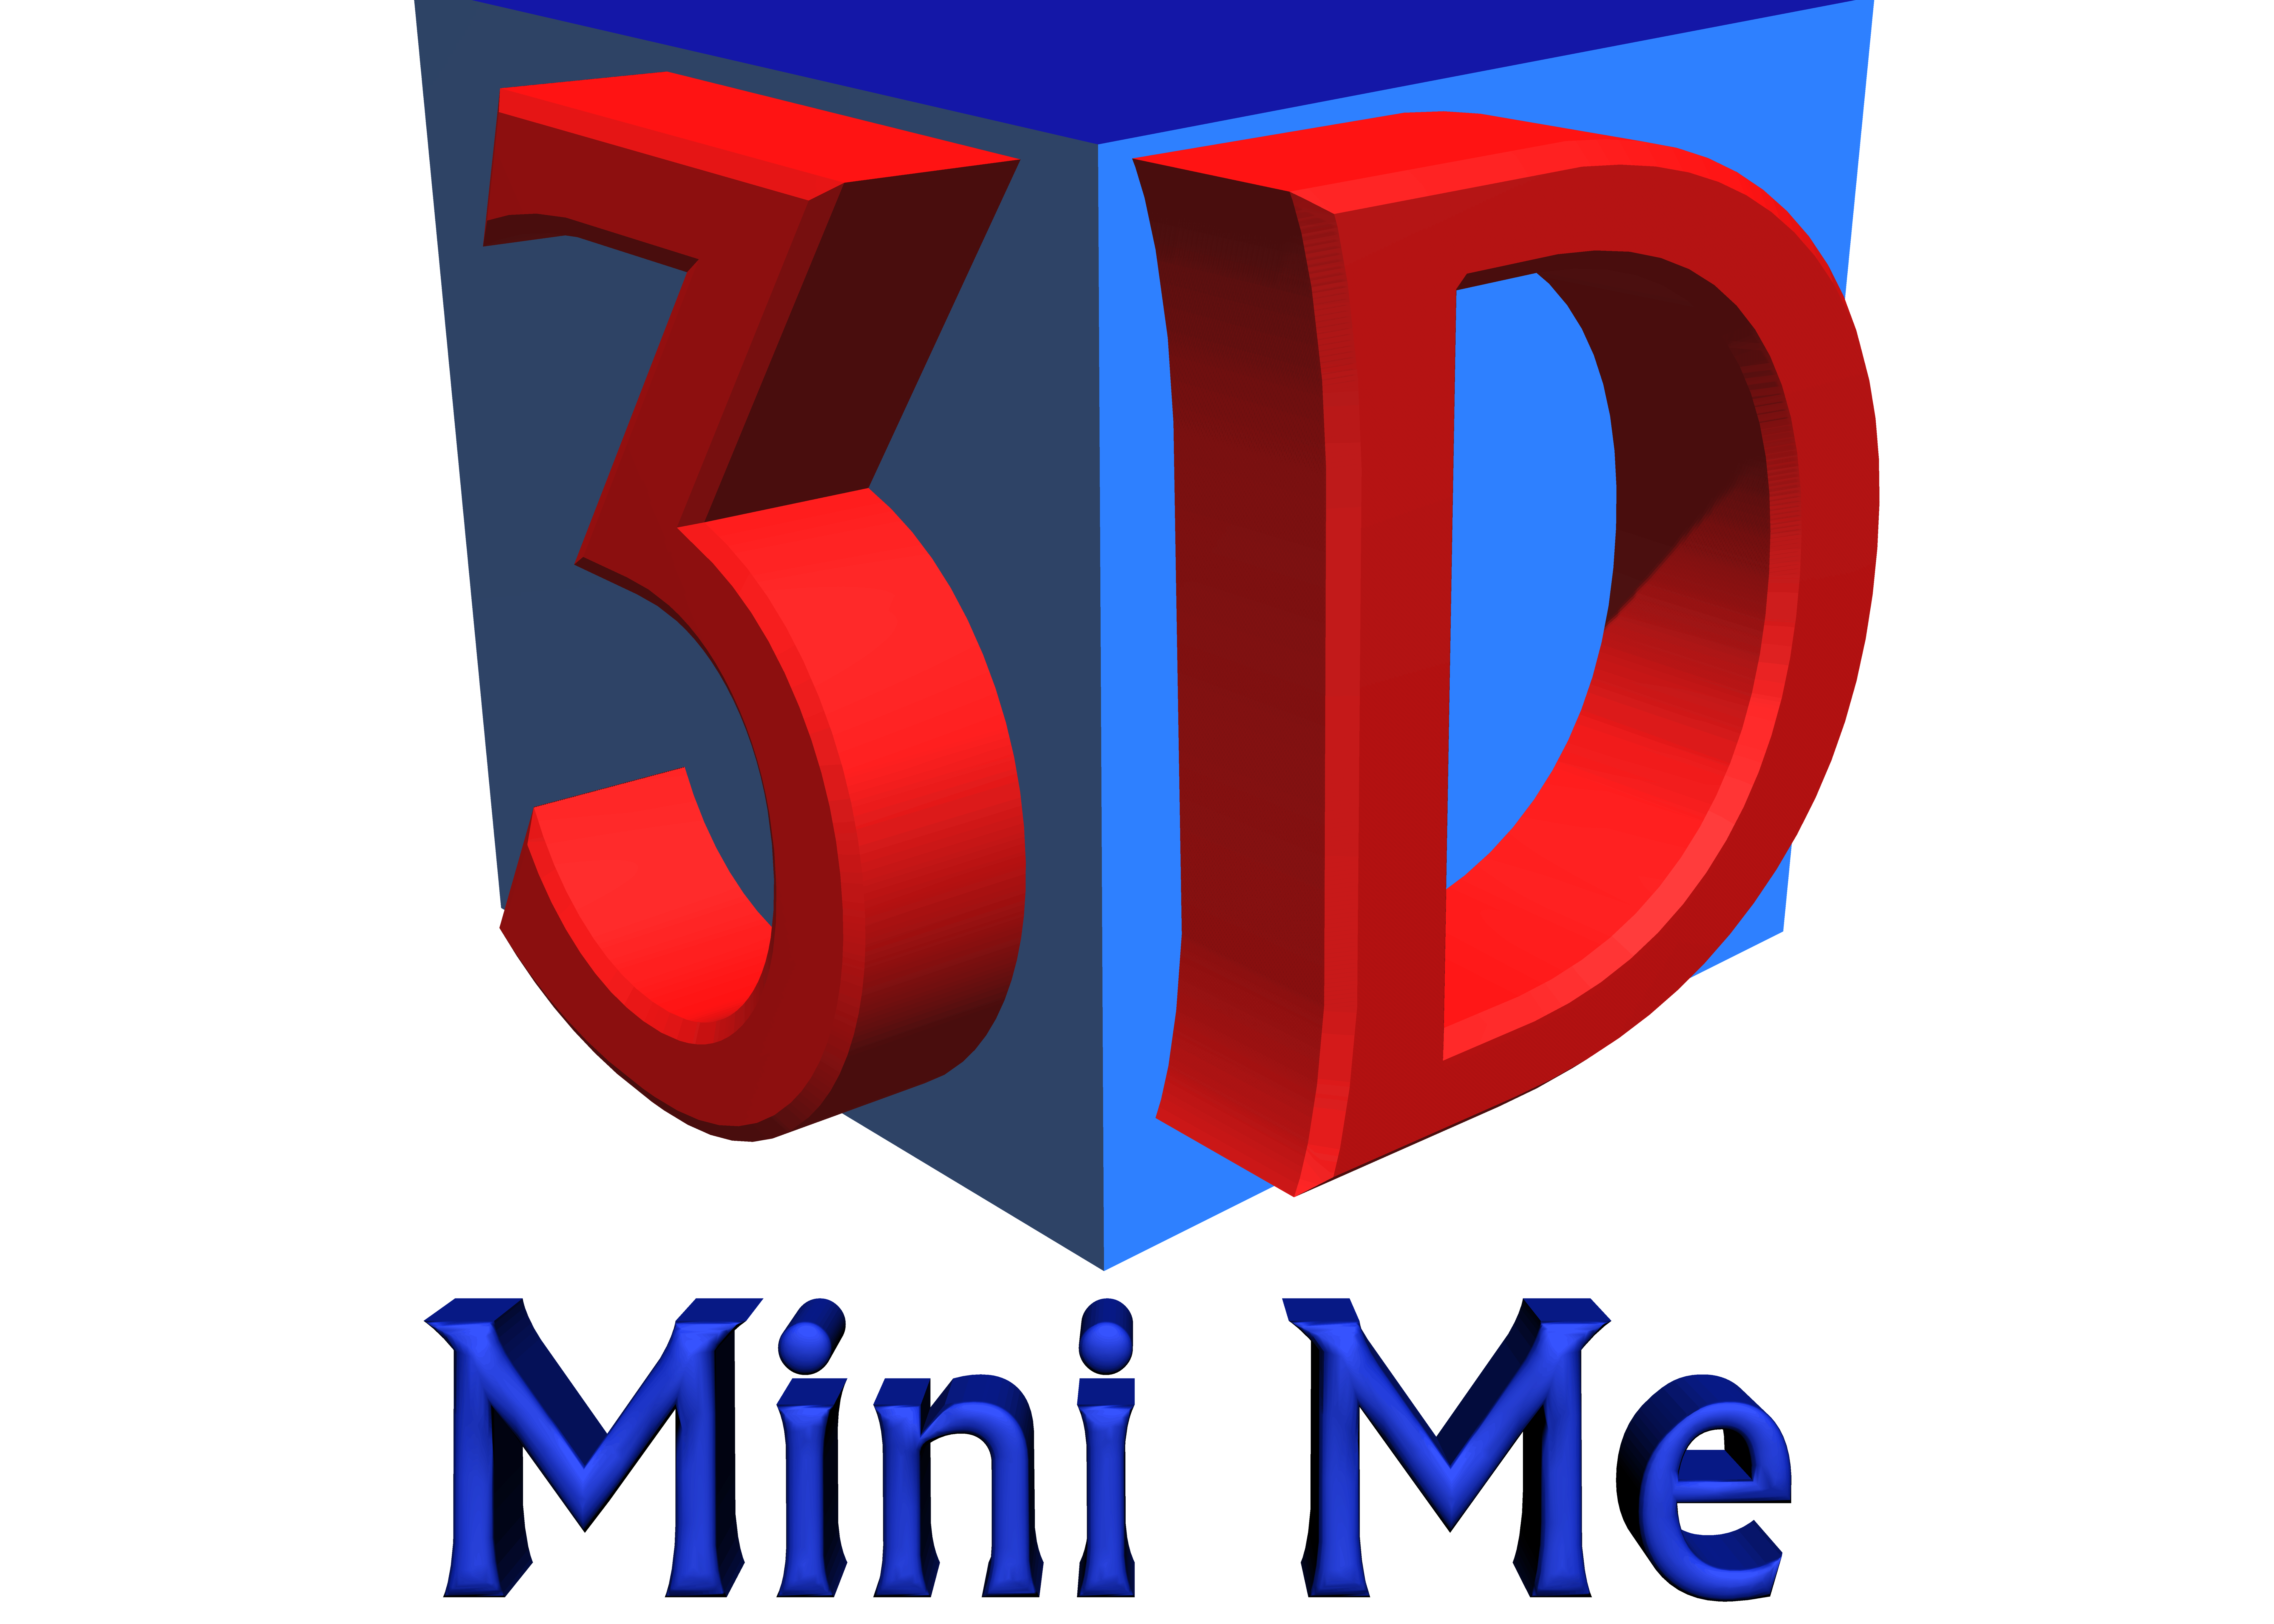 3D Mini Me